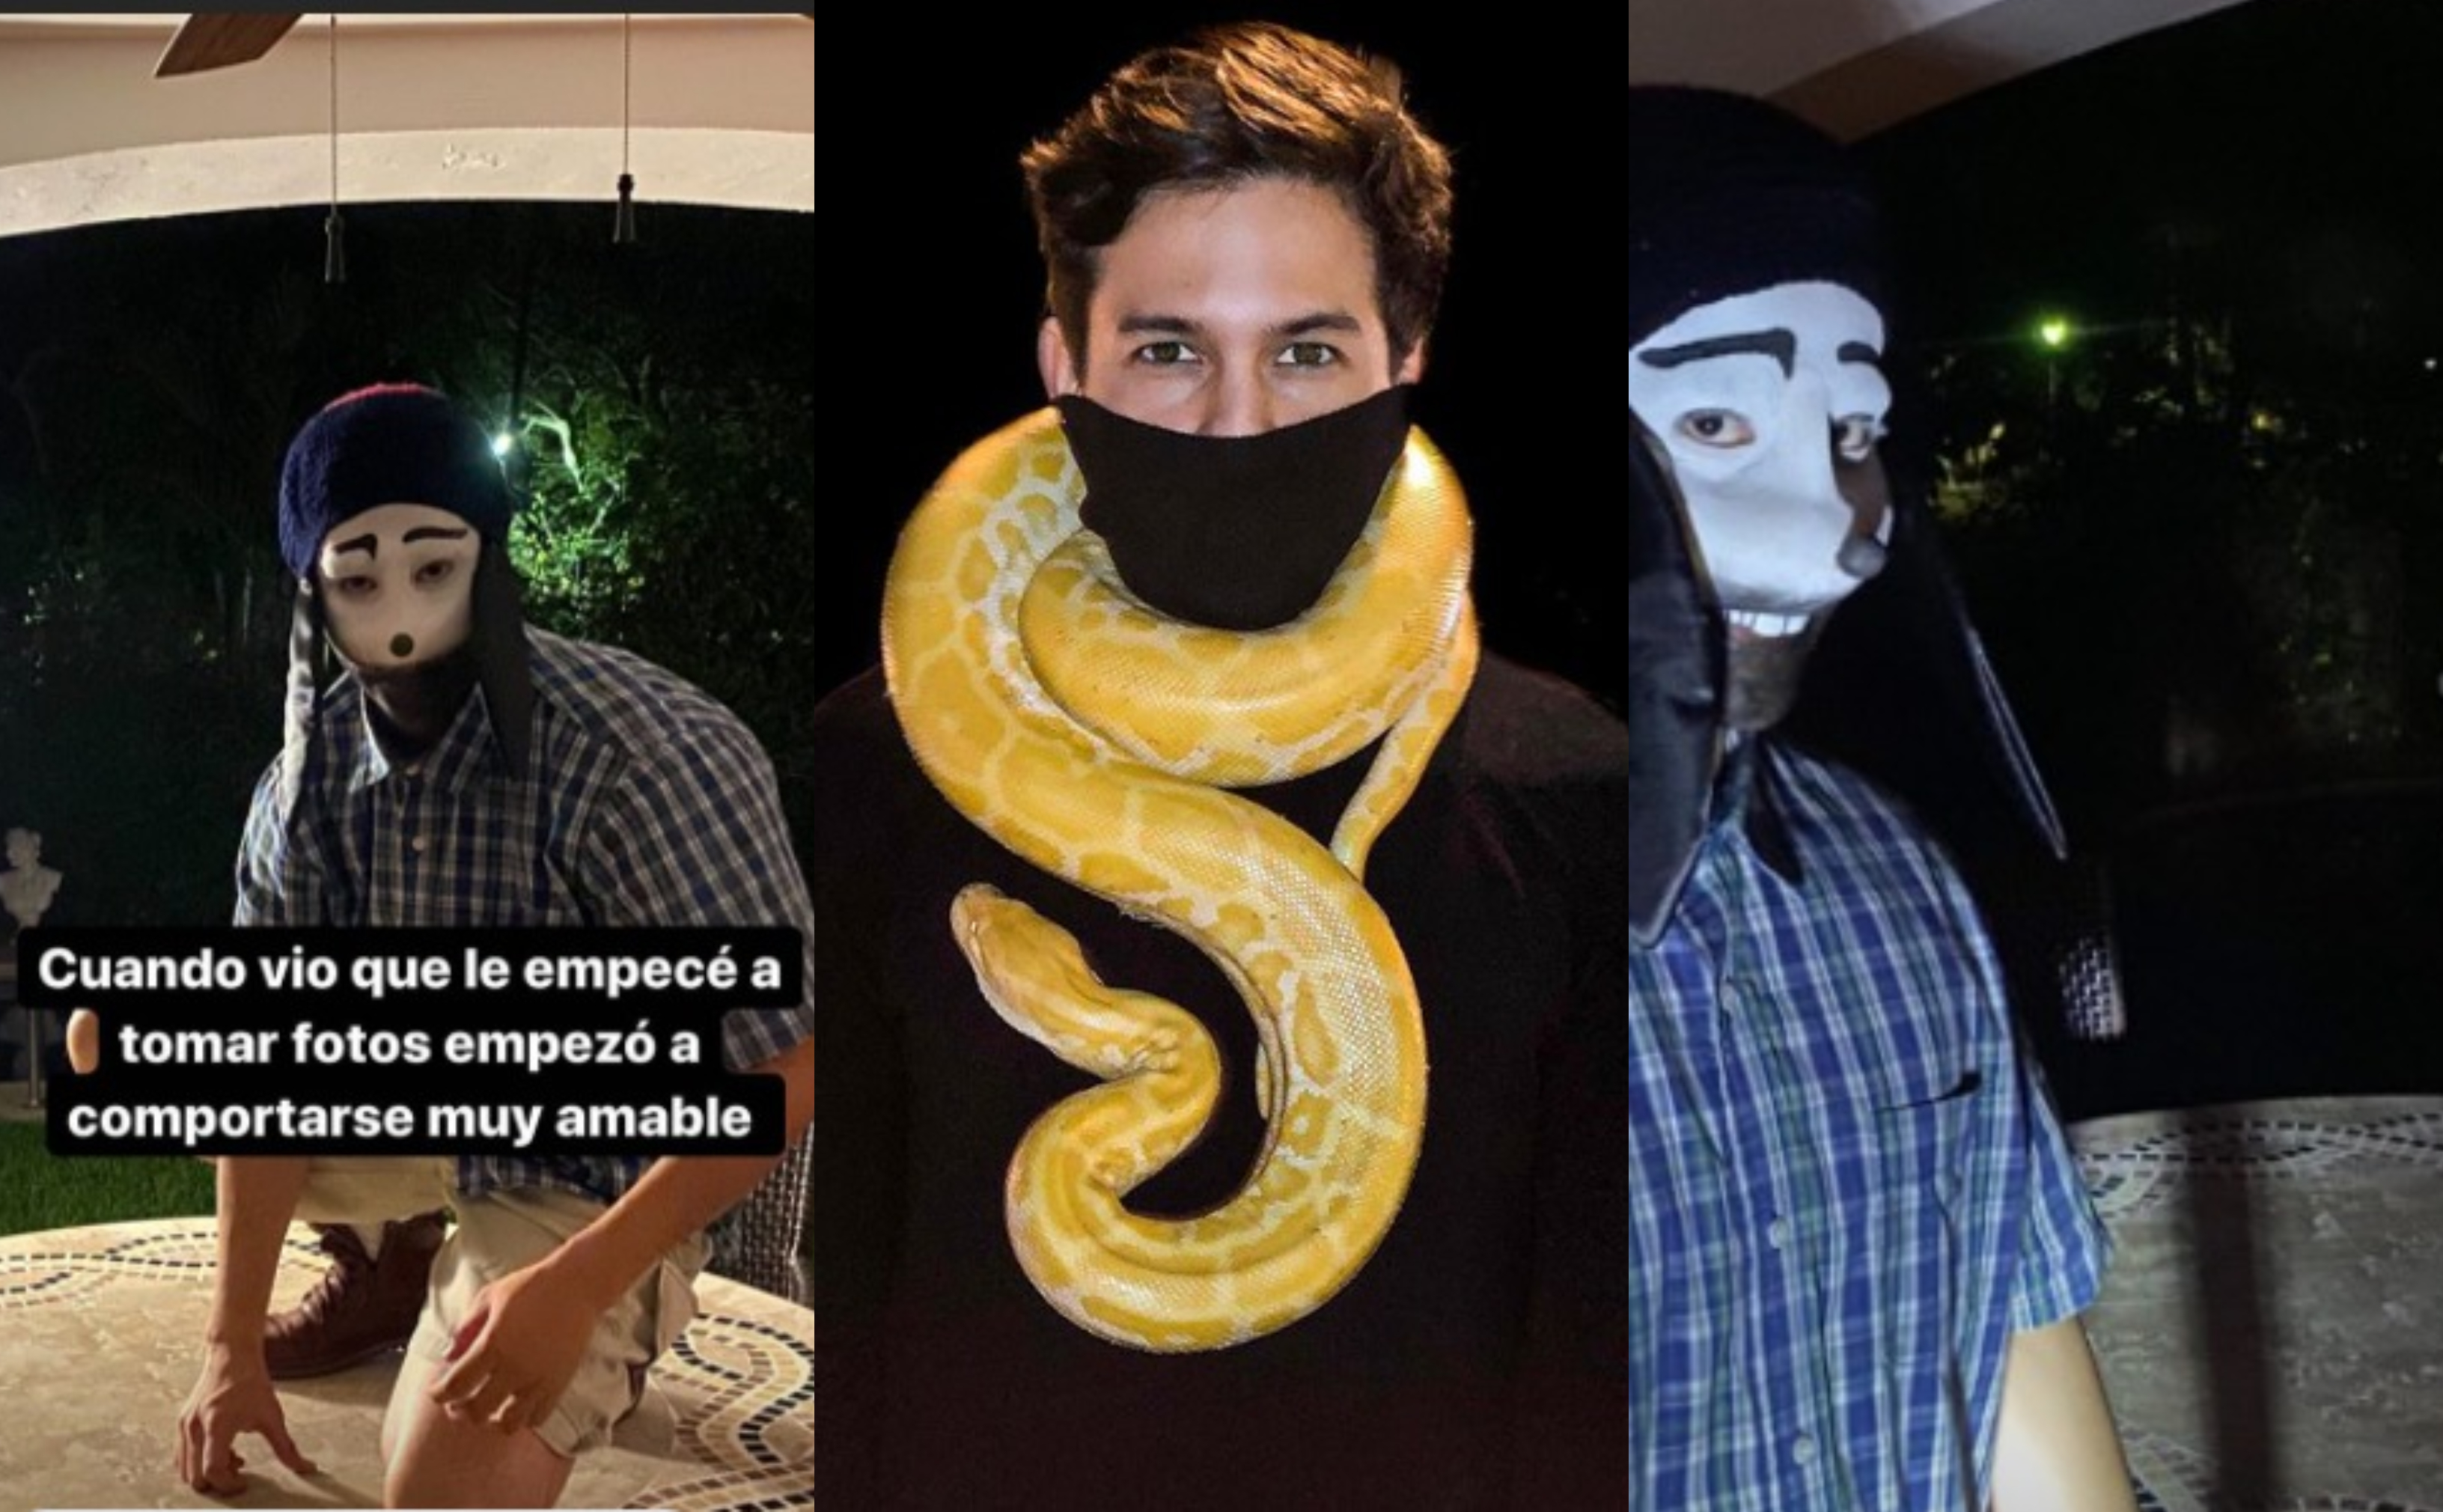 El influencer mexicano cuenta con 1,700,000 seguidores en Instagram y se dedica a relatar historias sobre sucesos "extraños" (Foto: Instagram@carlosname)